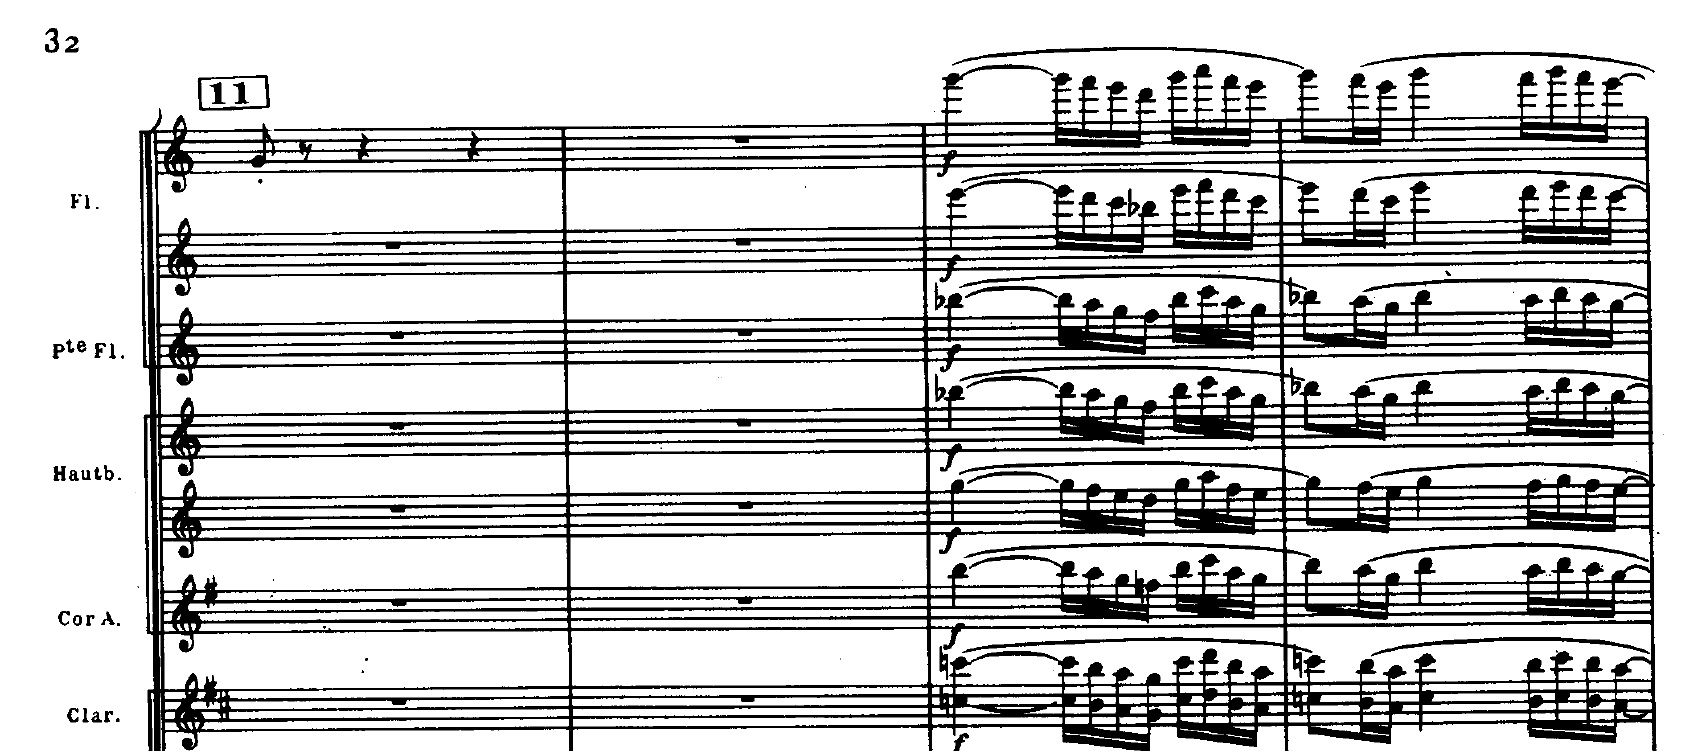 Figura 7: Fragmento de "Boléro", de Maurice Ravel